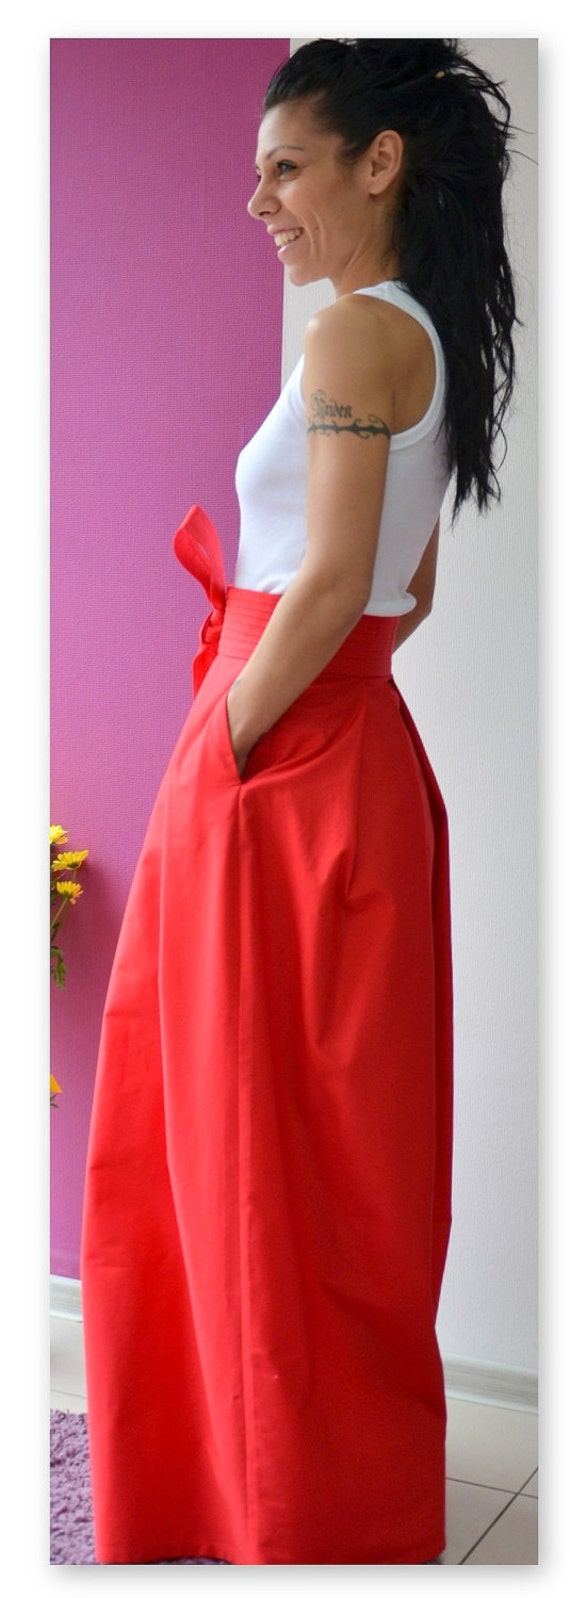 Long skirt / Fashion skirt / Maxi skirt /Woman high waist